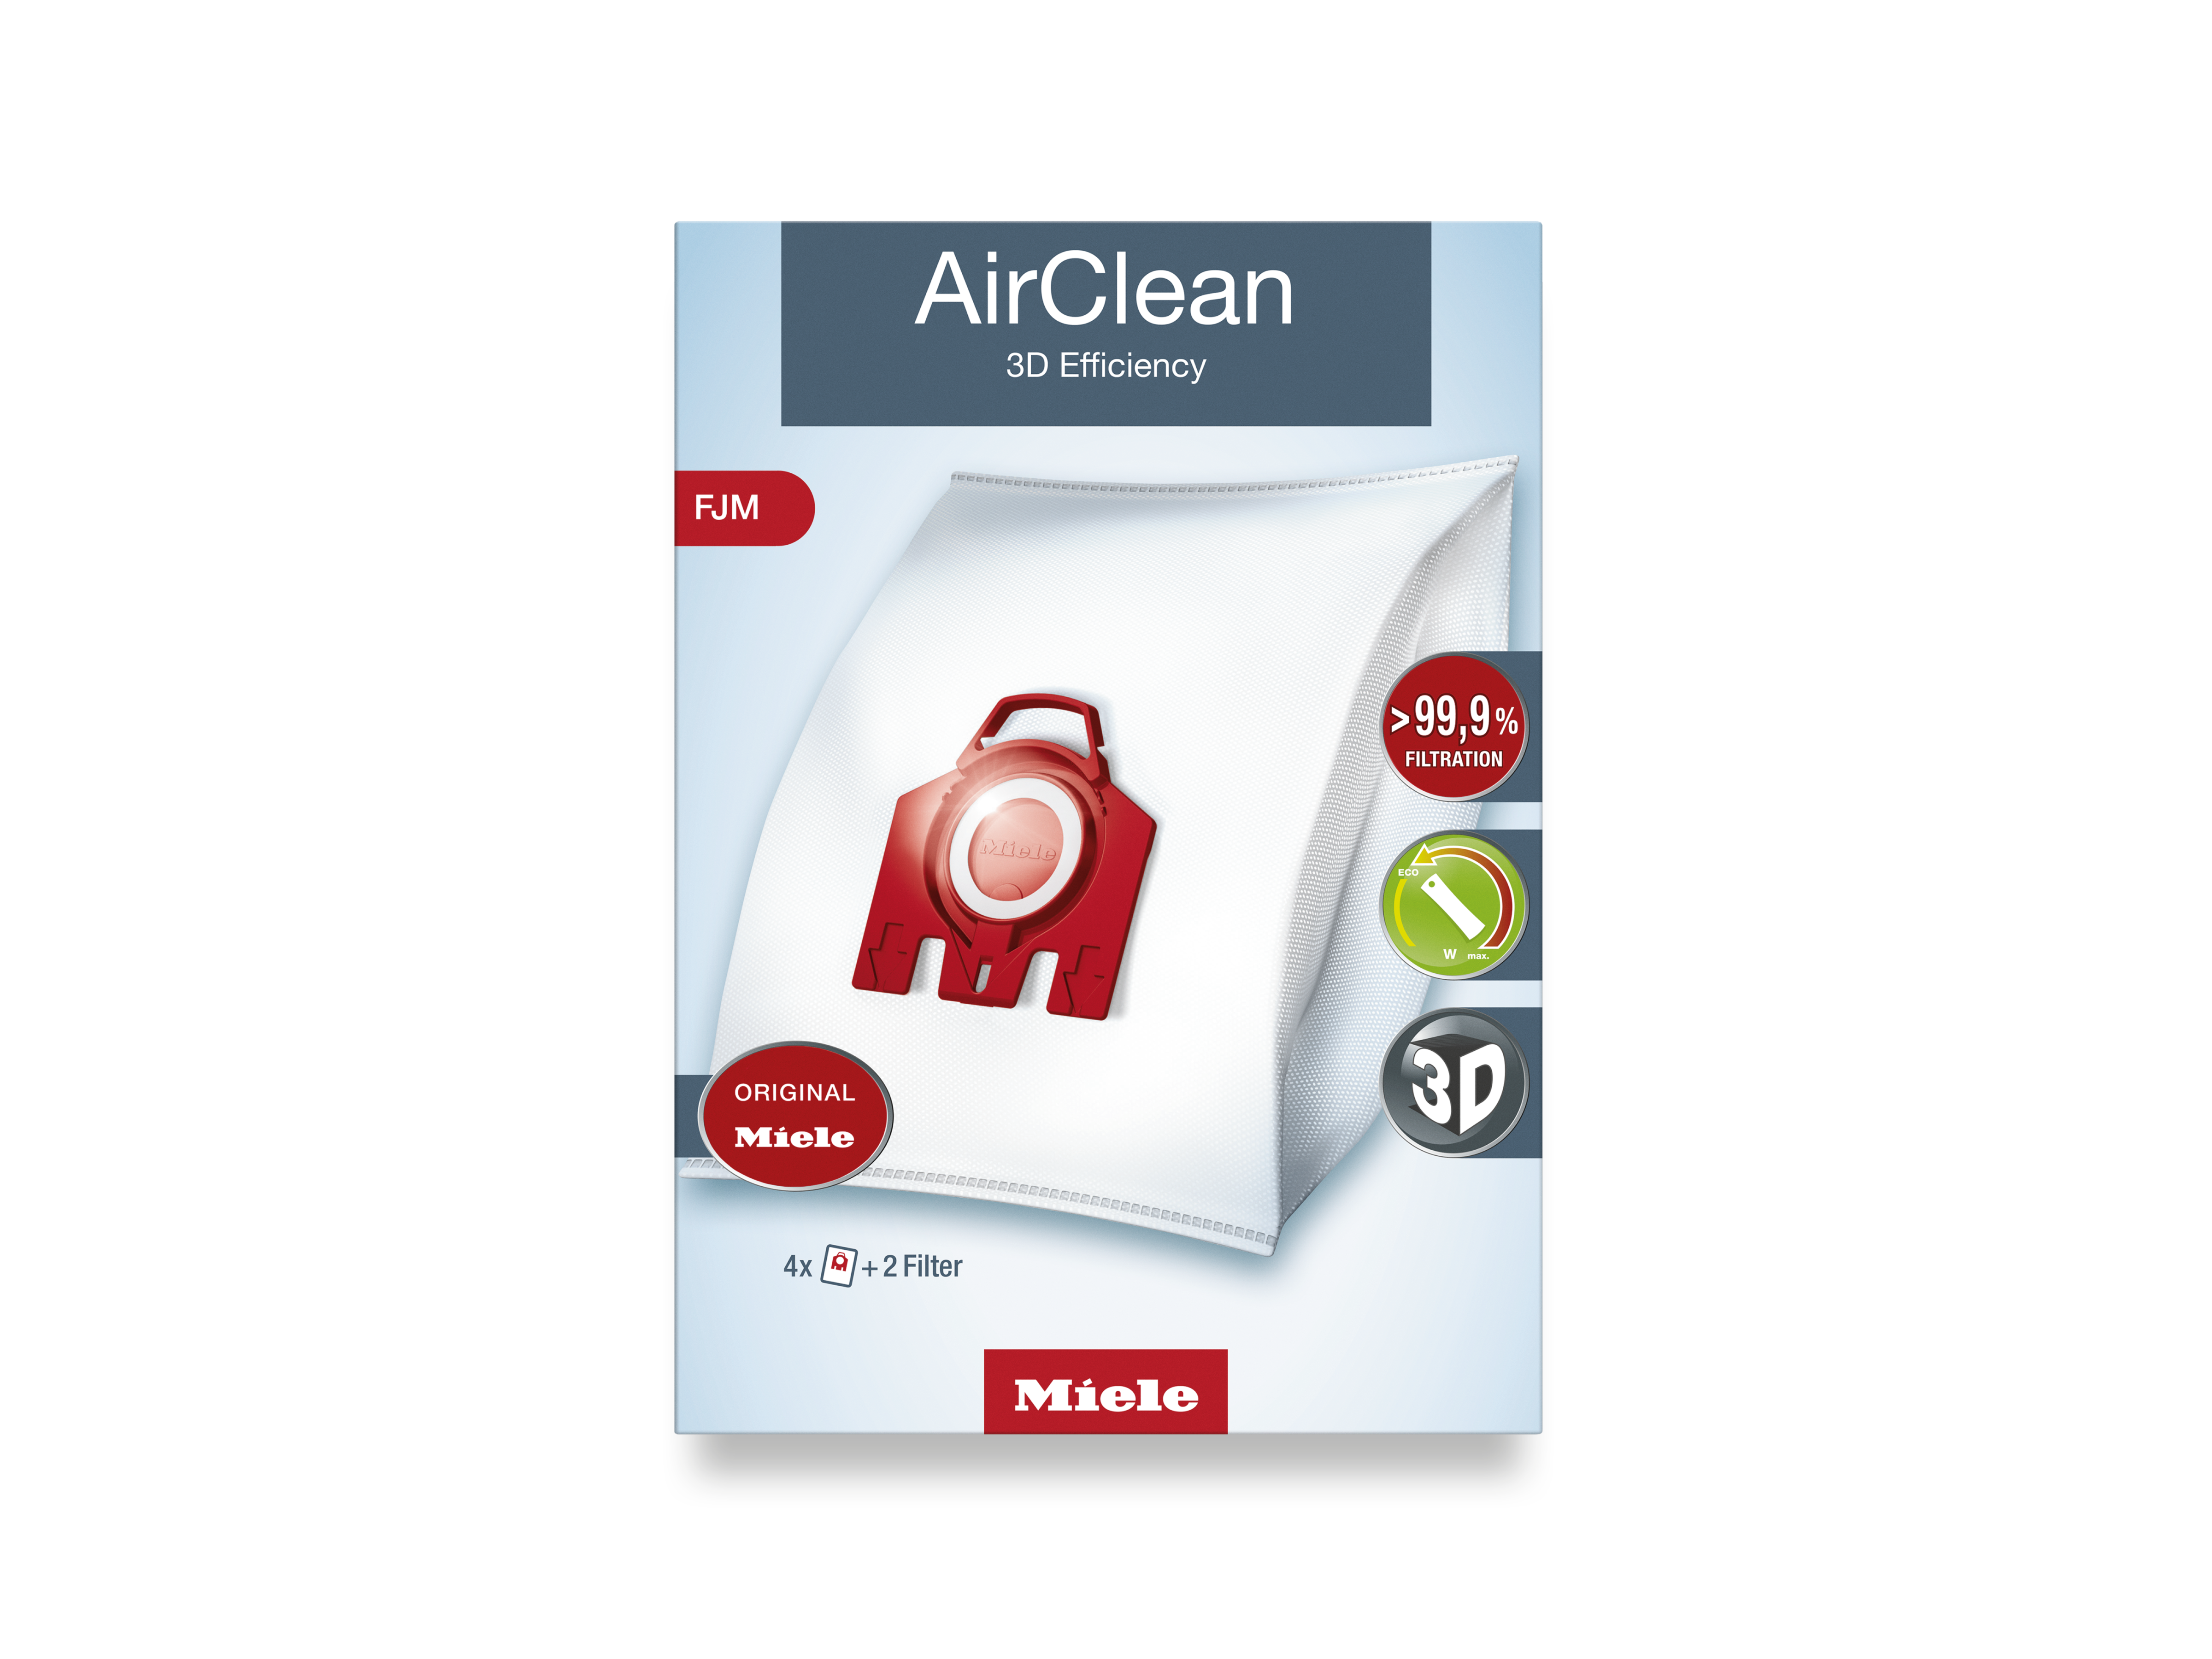 Miele - FJM AirClean 3D – Vacuum cleaner accessories